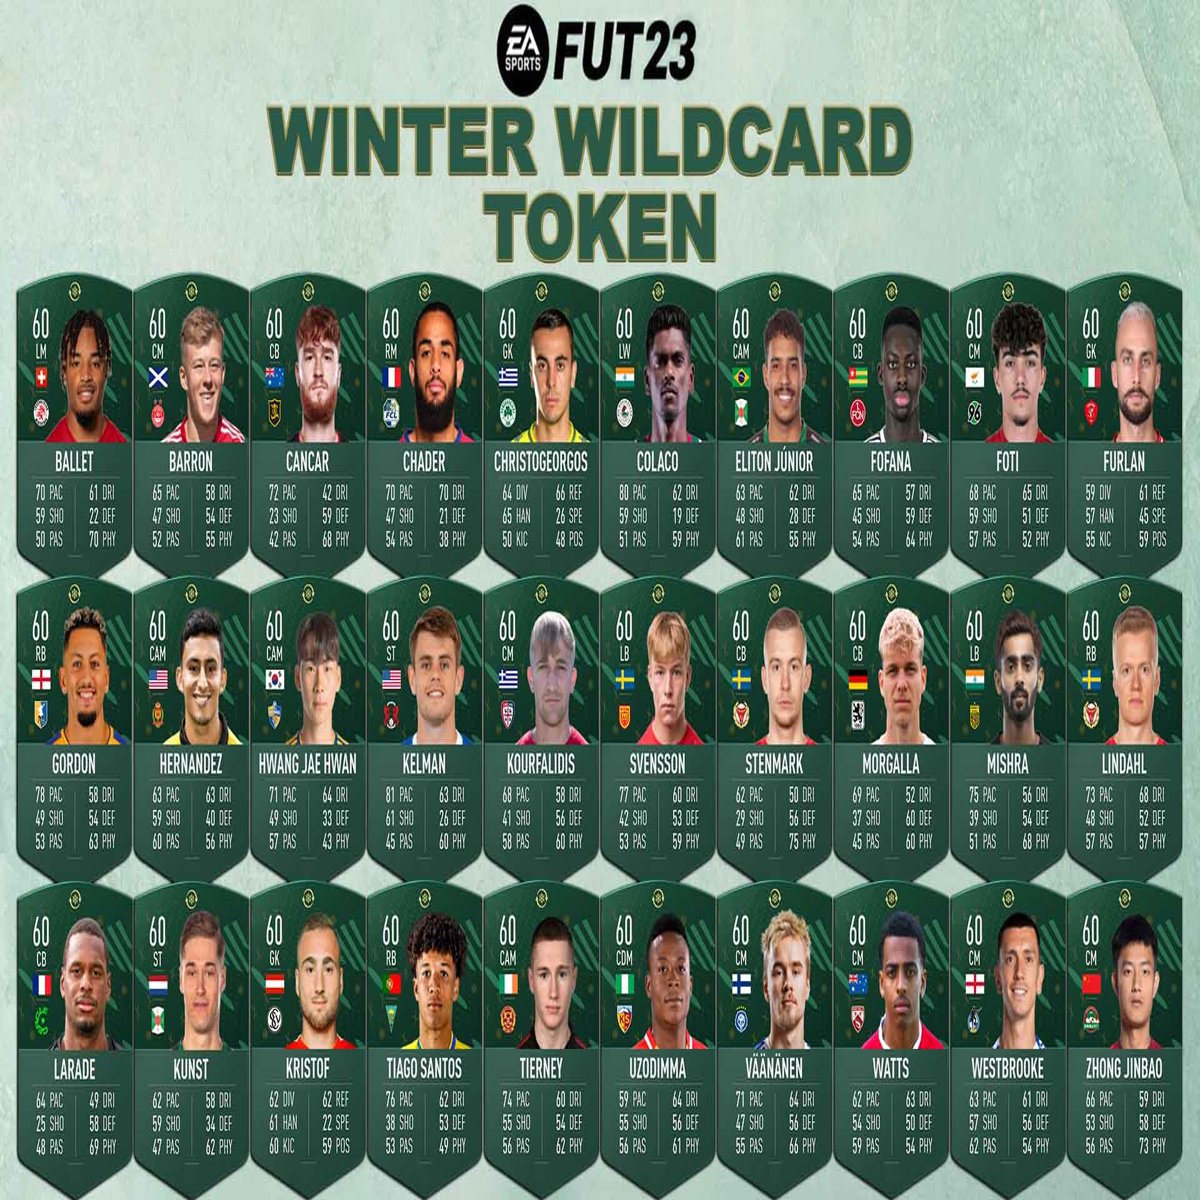 FIFA 23/FUT 23 Winter Wildcards Time 2: Veja cartas e jogadores